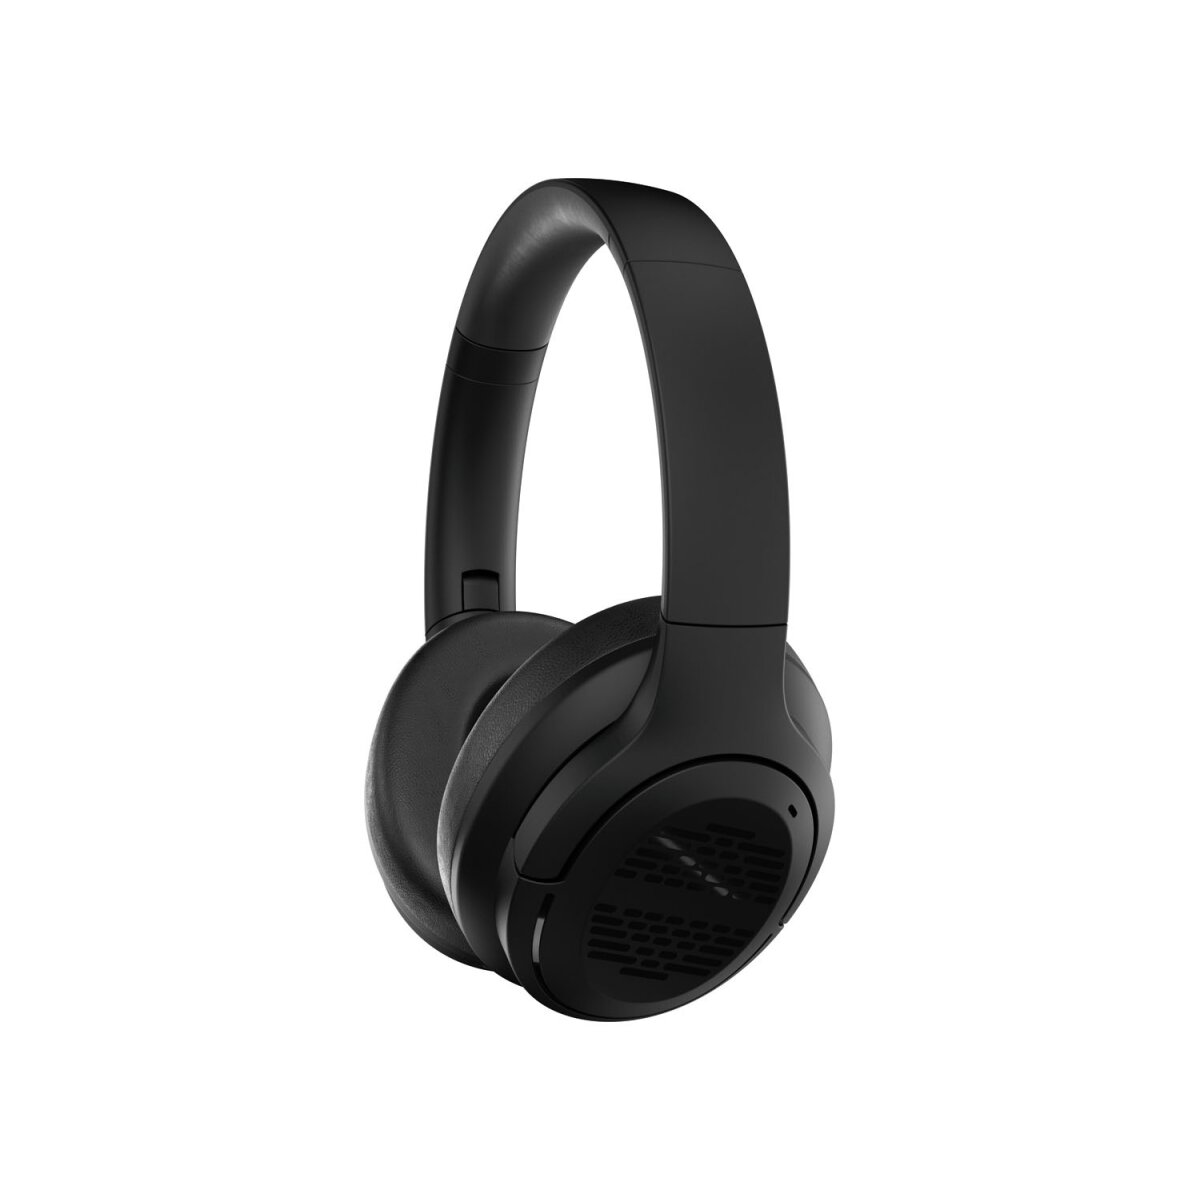 19,99 Bluetooth®-On-Ear-Kopfhörer - ANC gut, »Rhythm« B-Ware sehr € SILVERCREST®